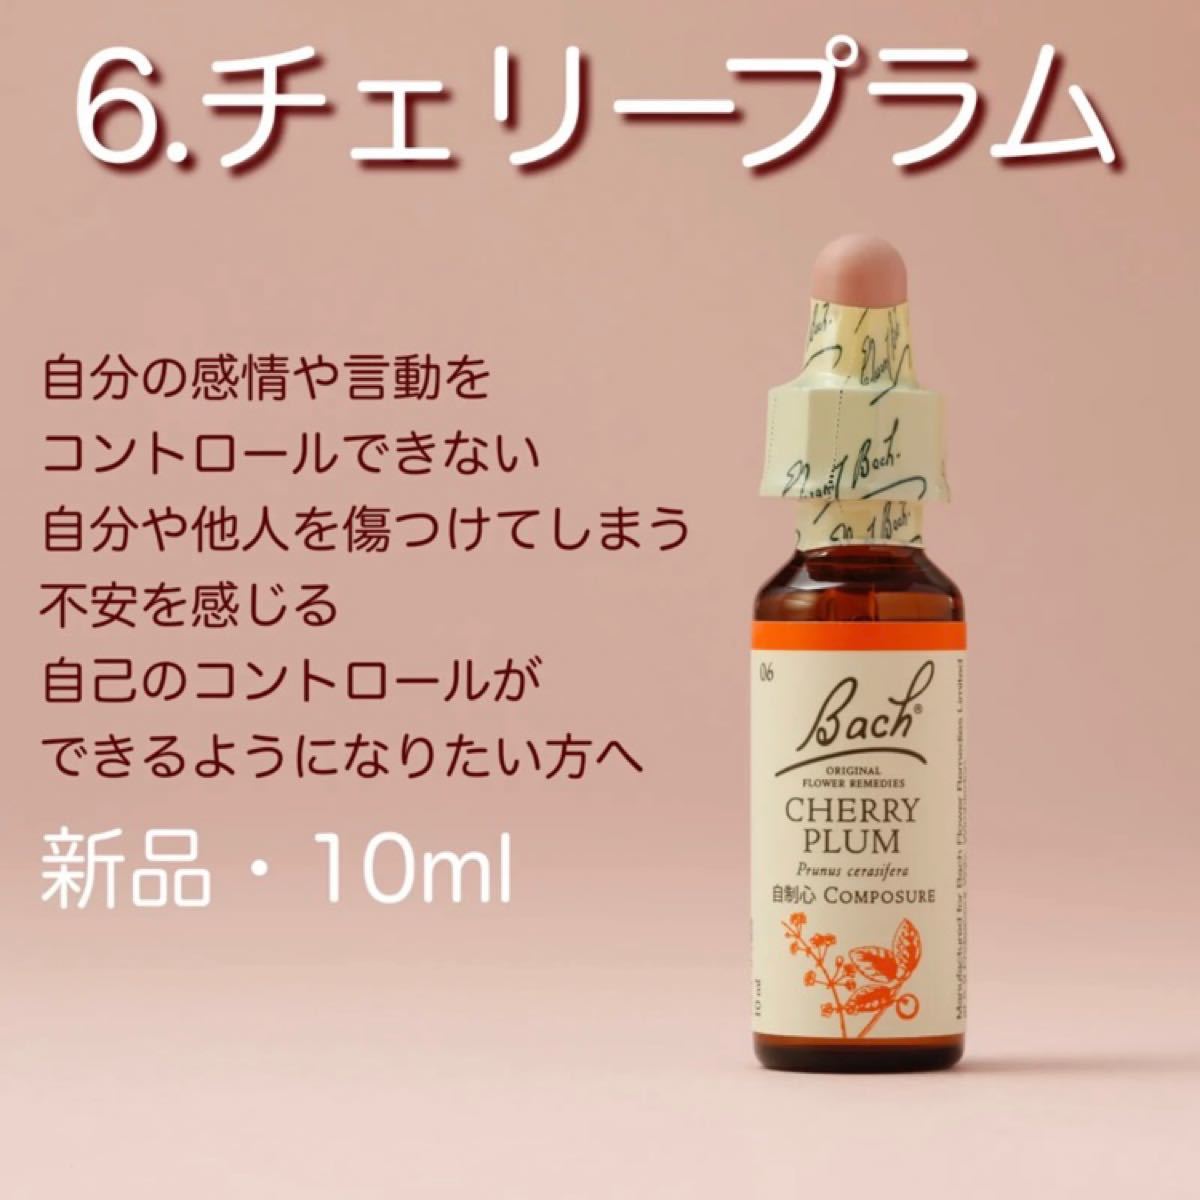 新作商品 バッチフラワー スターオブベツレヘム 20ml アルコール 日本国内正規品